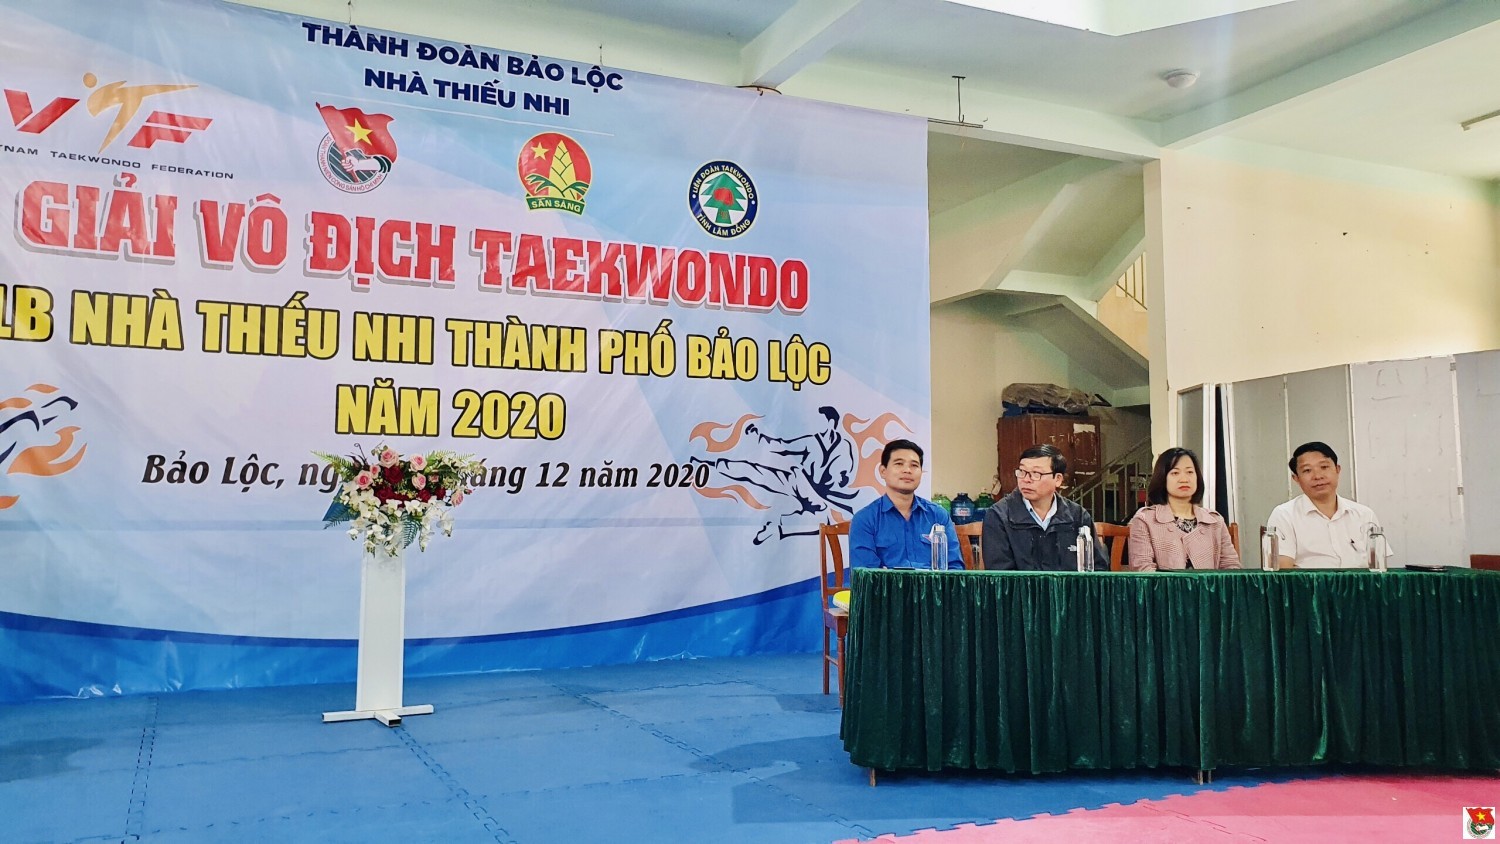 Giải vô địch Taekwondo CLB nhà thiếu nhi Bảo Lộc năm 2020.